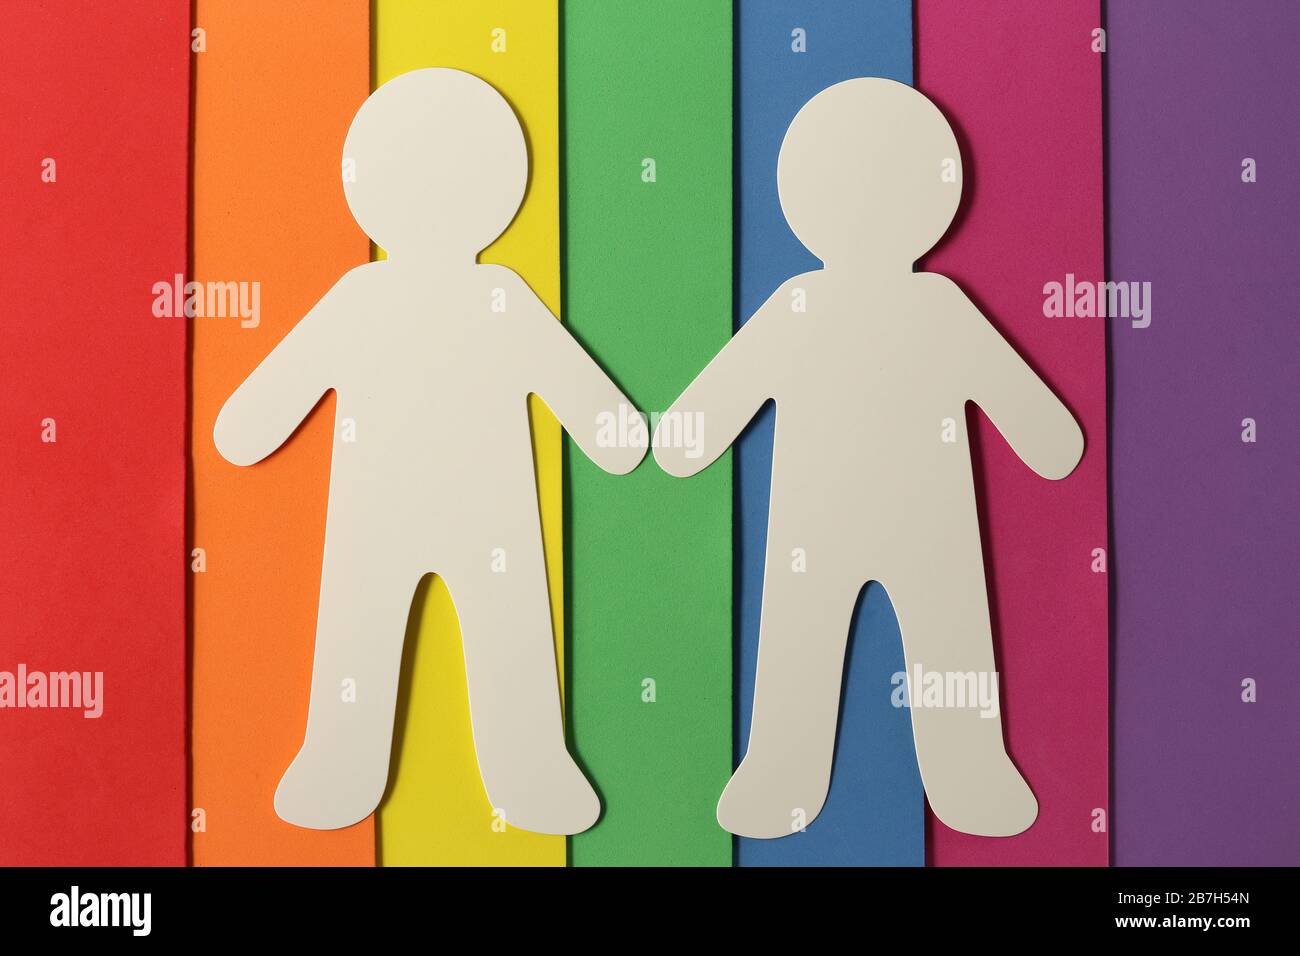 Symbole de culture LGBT, concept de famille homosexuelle, silhouette de femmes sur le drapeau coloré Banque D'Images